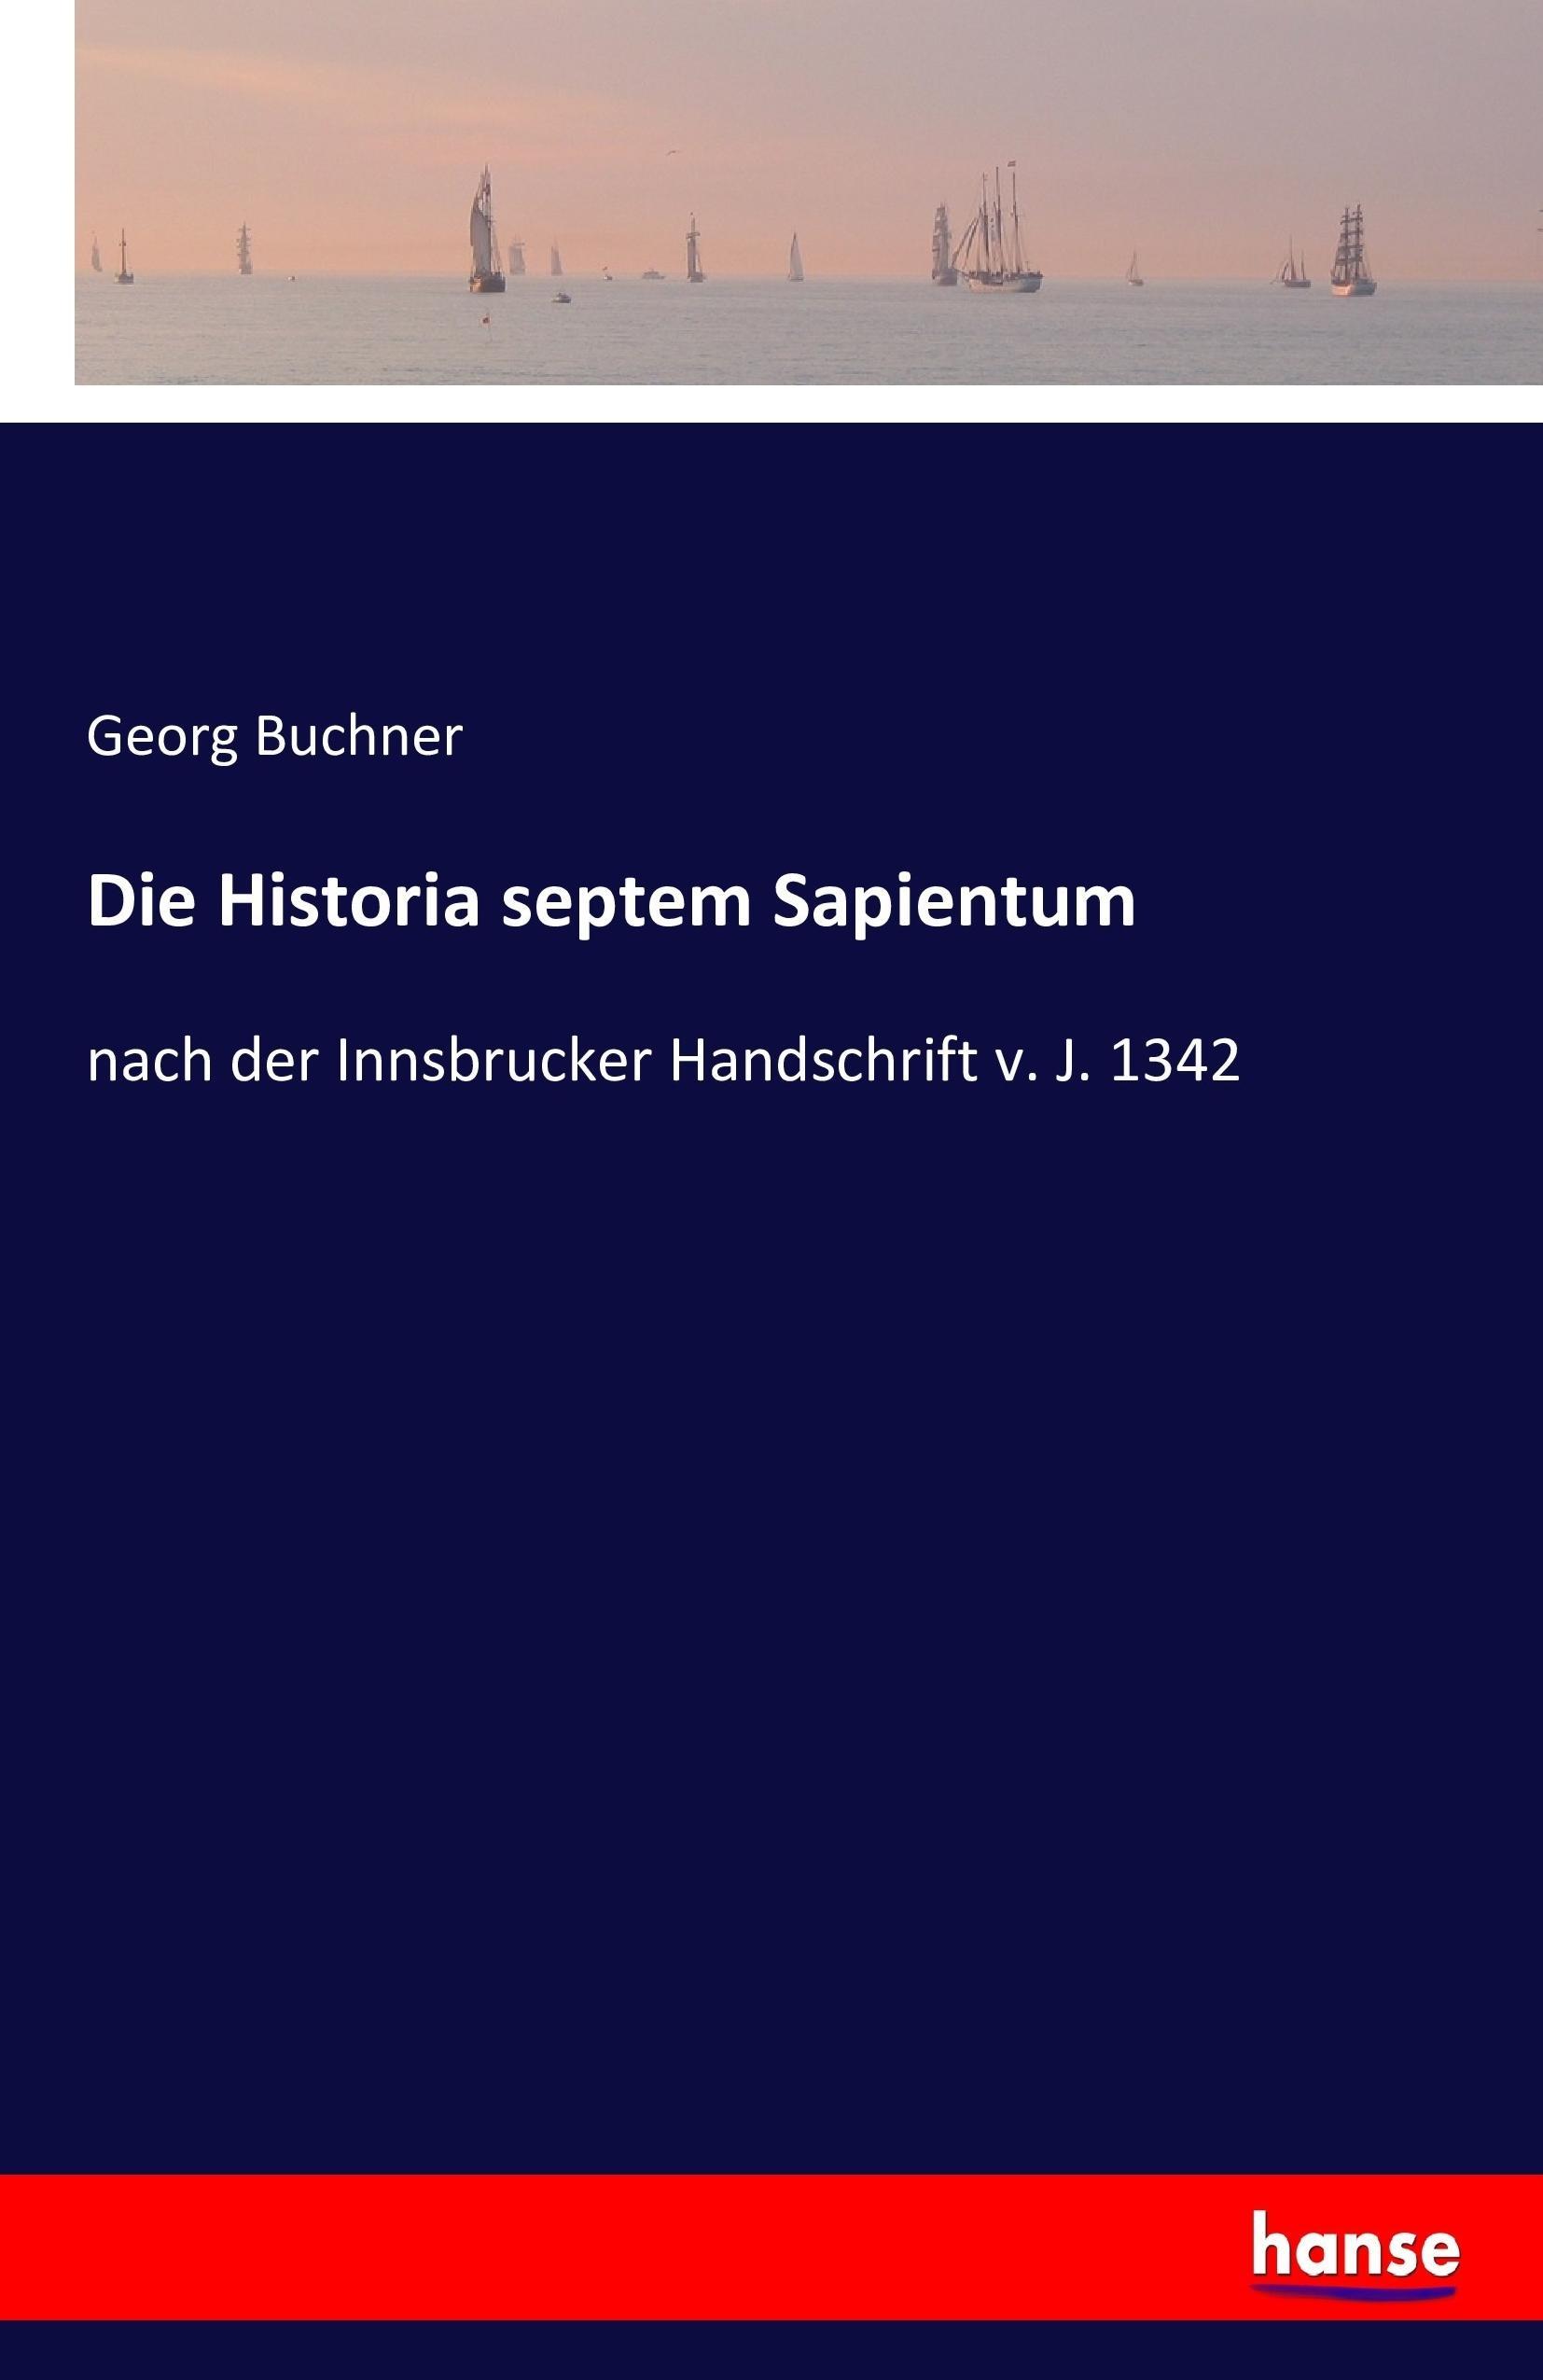 Die Historia septem Sapientum - Buchner, Georg